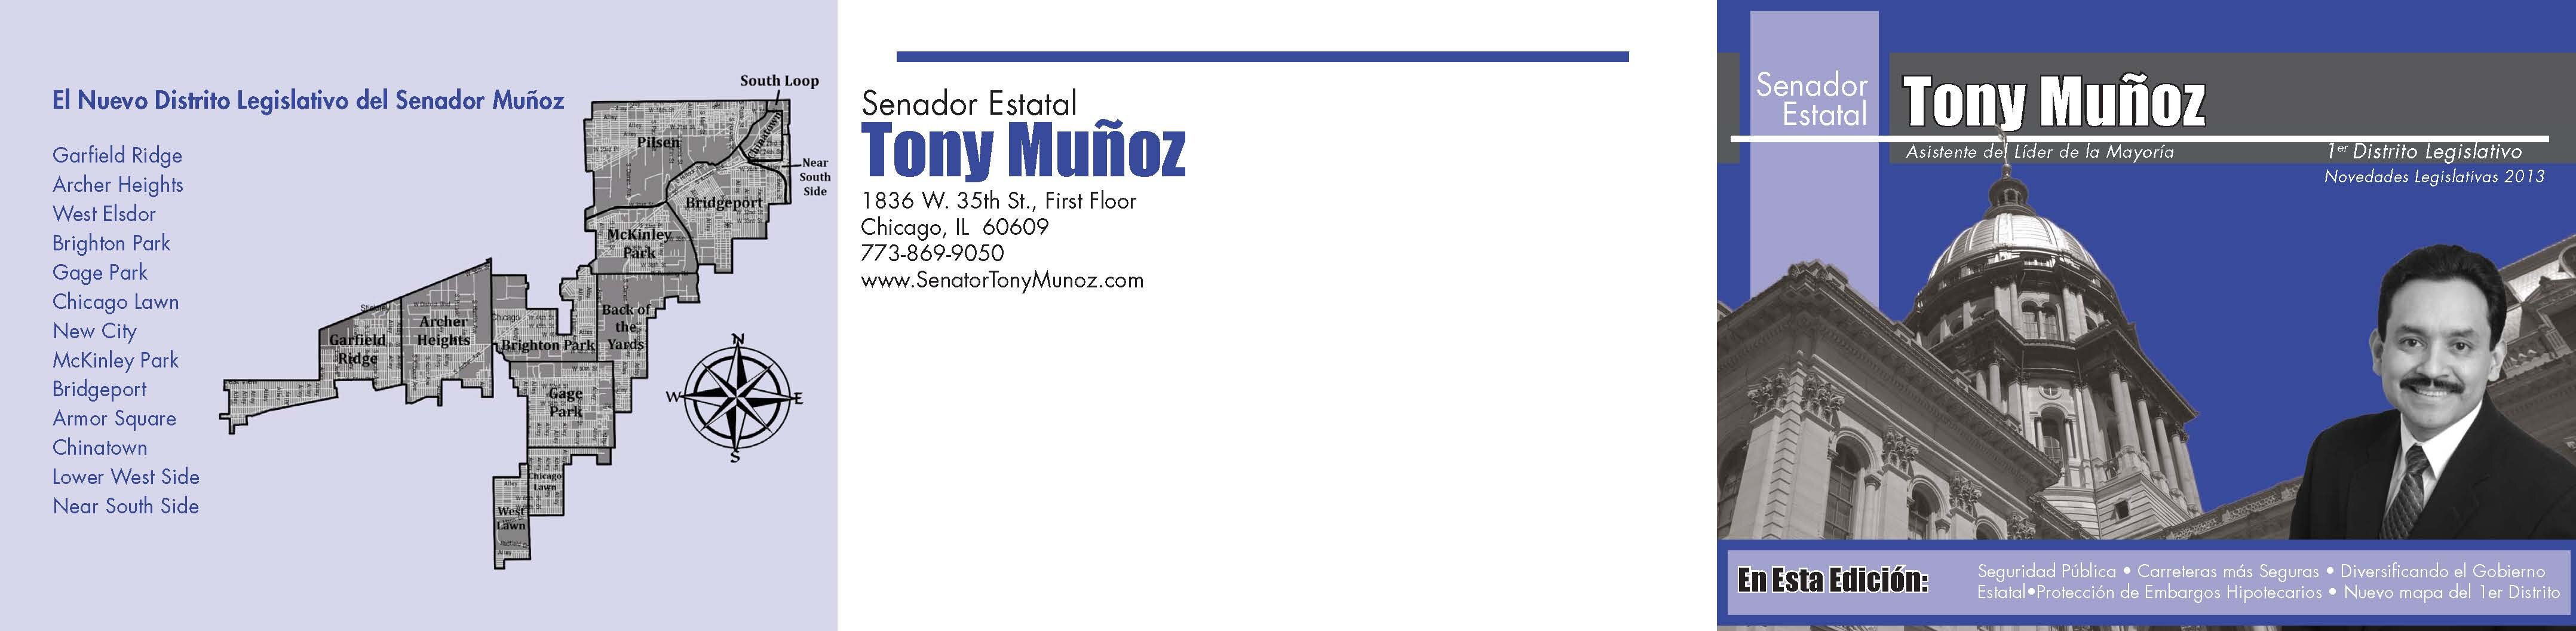 Munoz13 Spanish Page 1